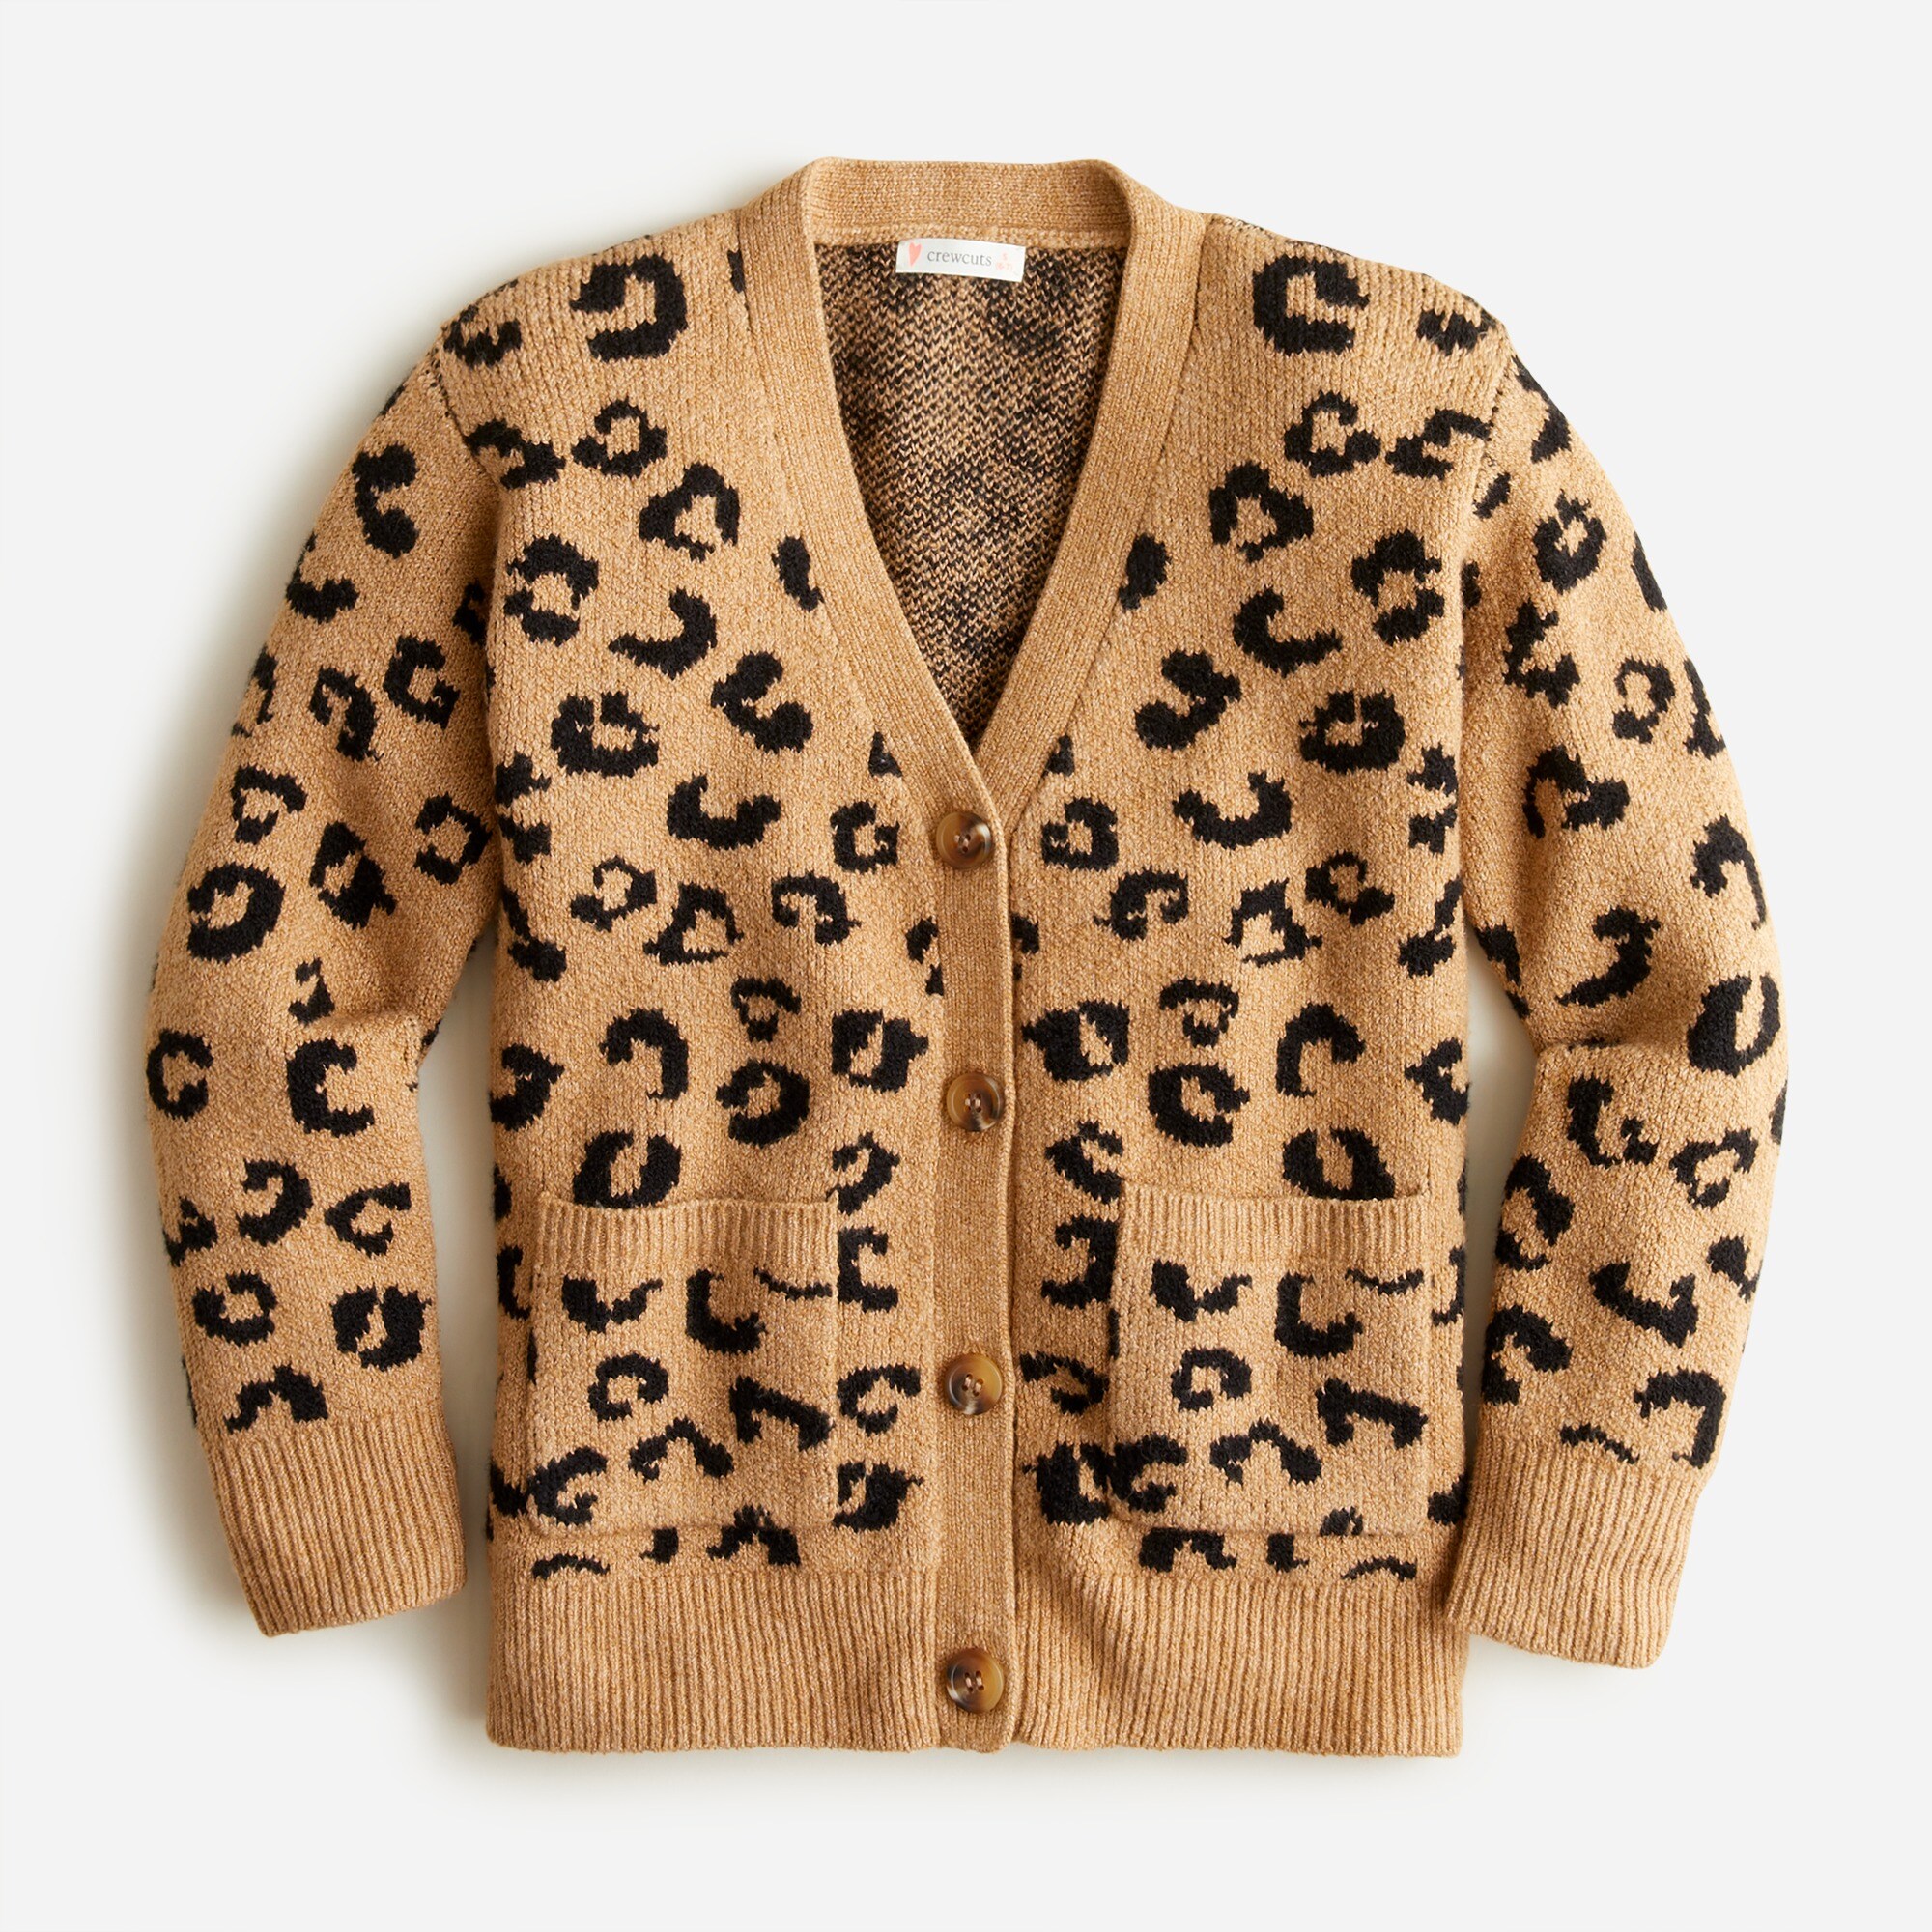 제이크루 걸즈 가디건 J.Crew Girls boxy cardigan sweater in leopard print,CAMEL BLACK MULTI